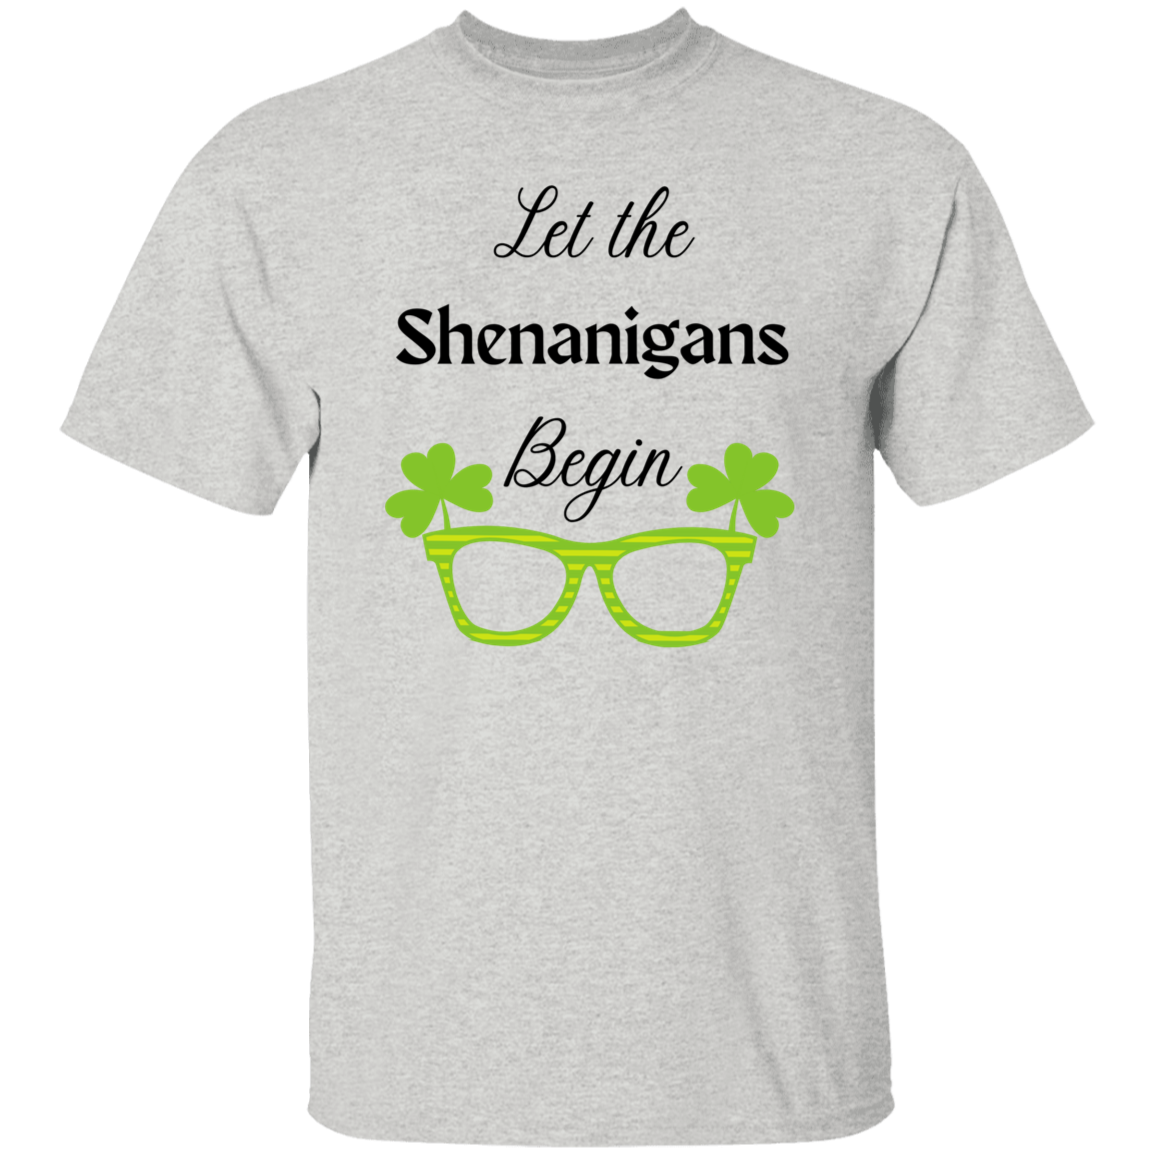 Let the Shenanigans Begin T-Shirt